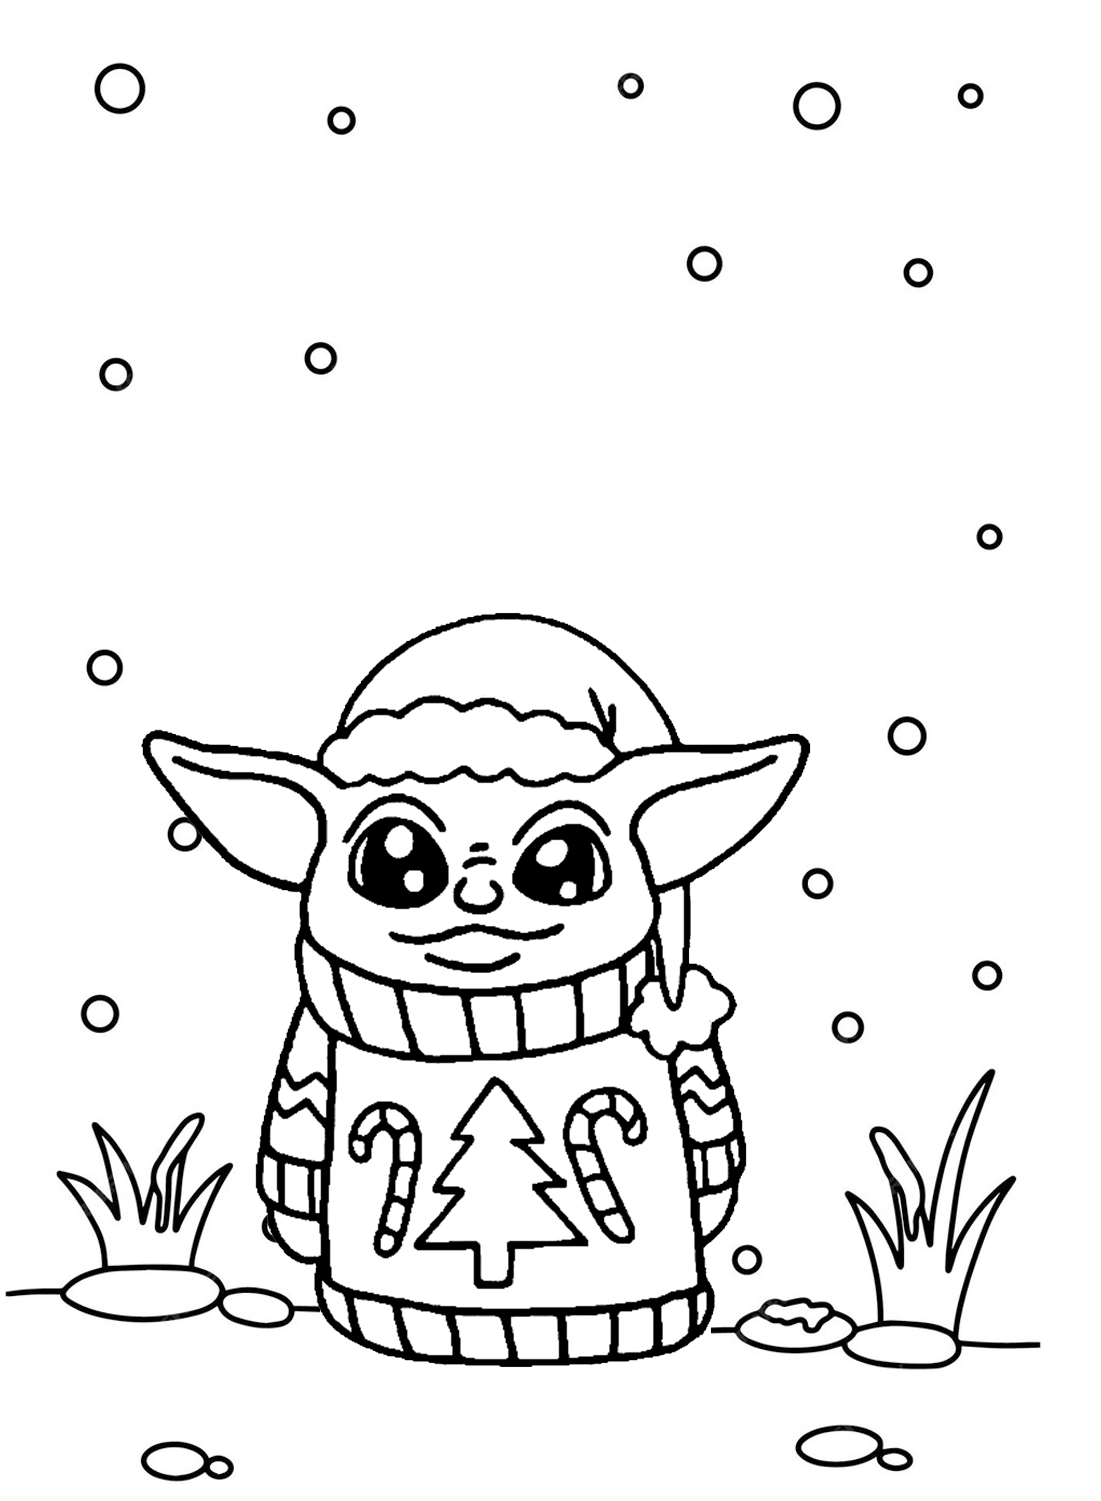 Folha para colorir do Baby Yoda Papai Noel do Baby Yoda